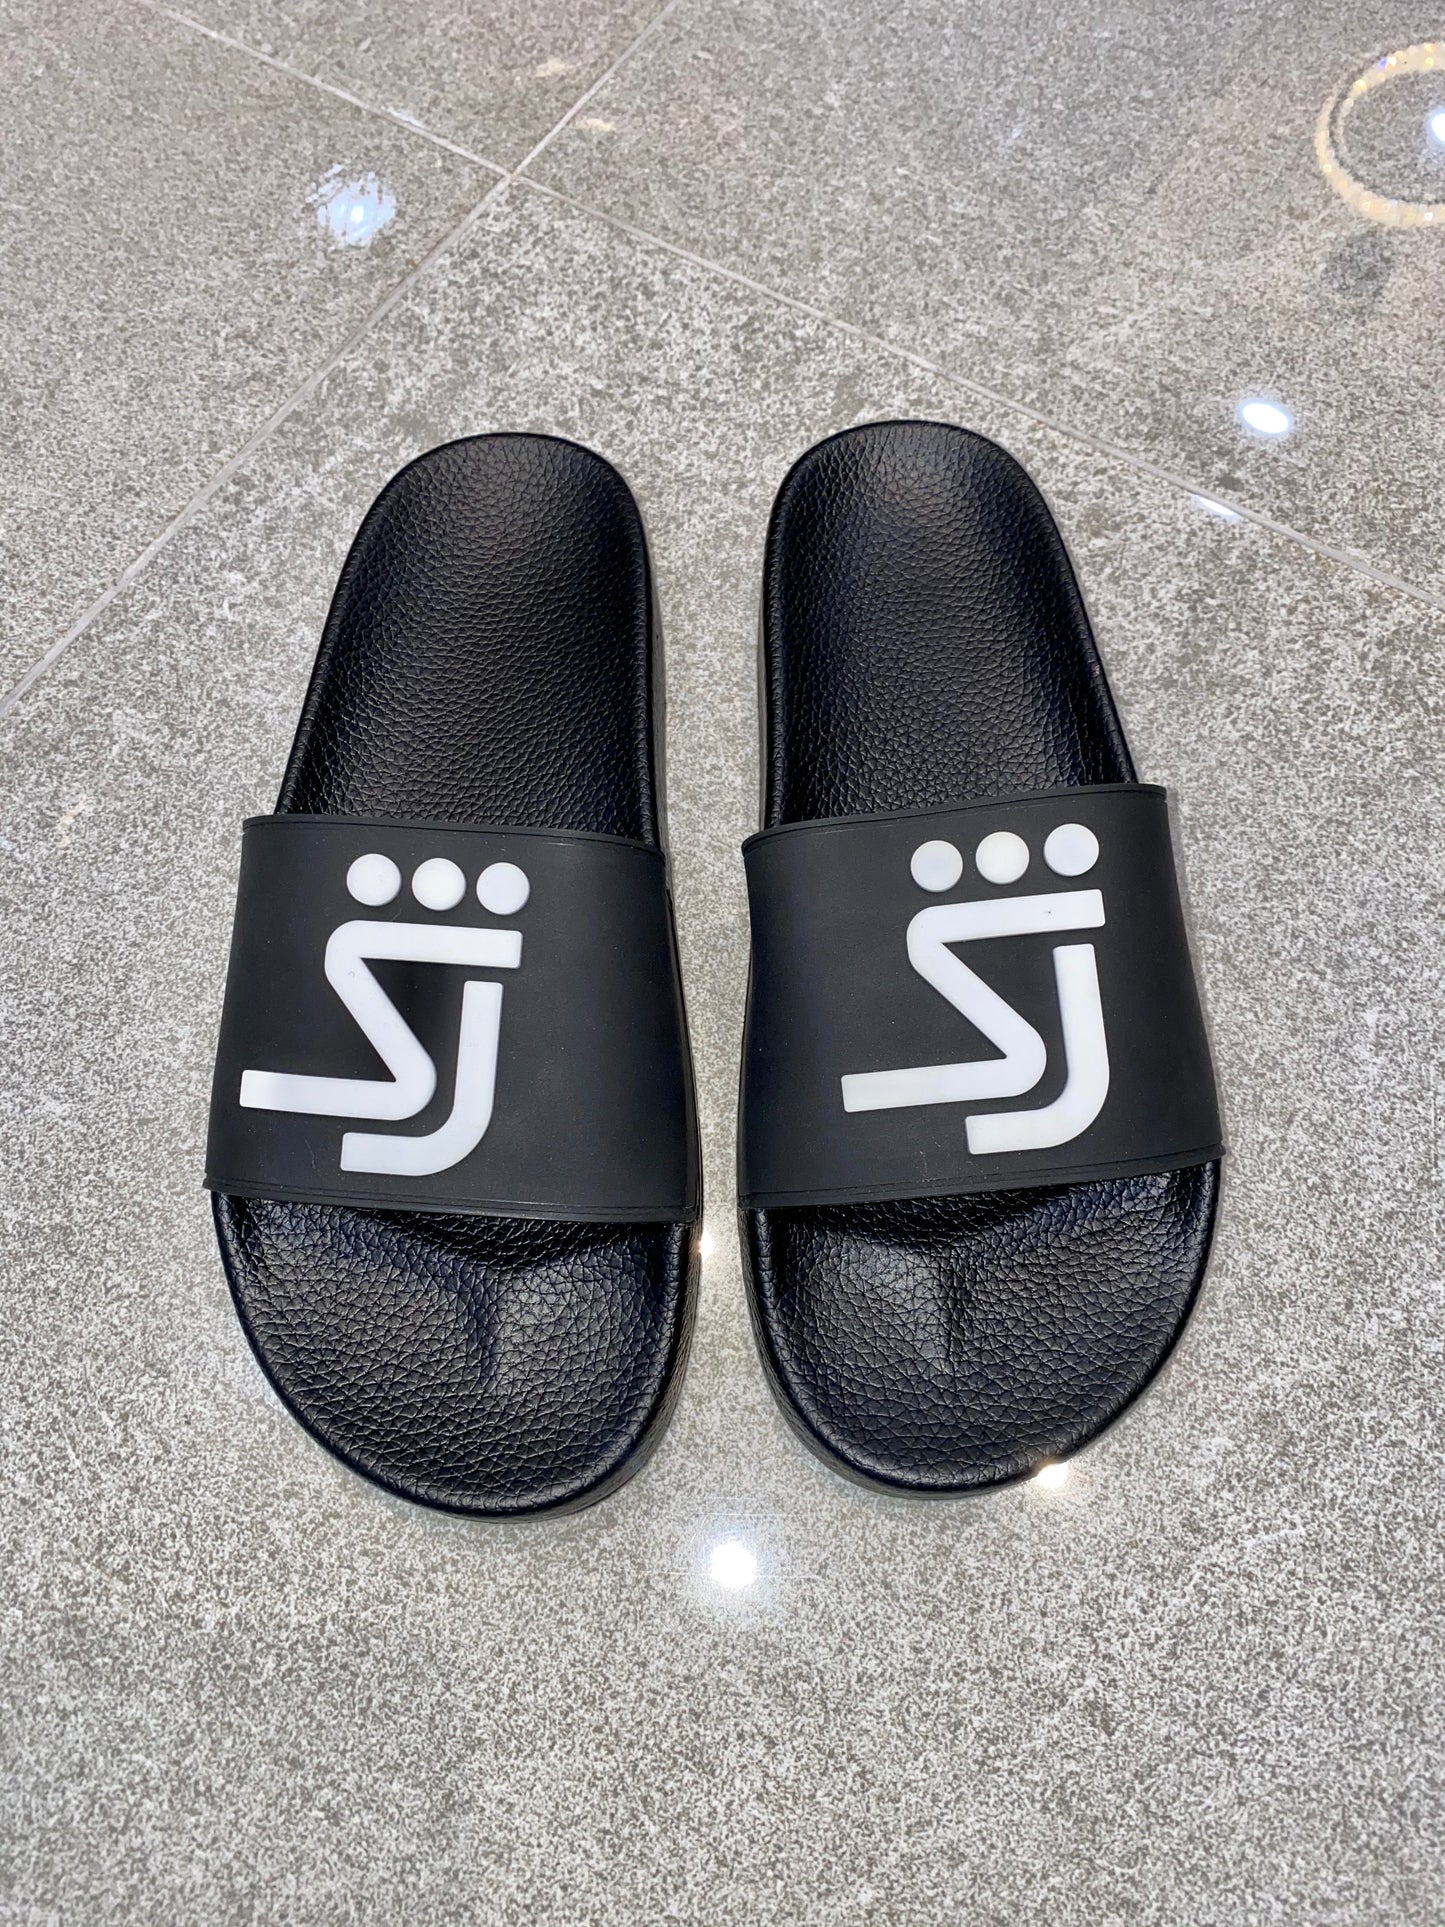 SJ Slides